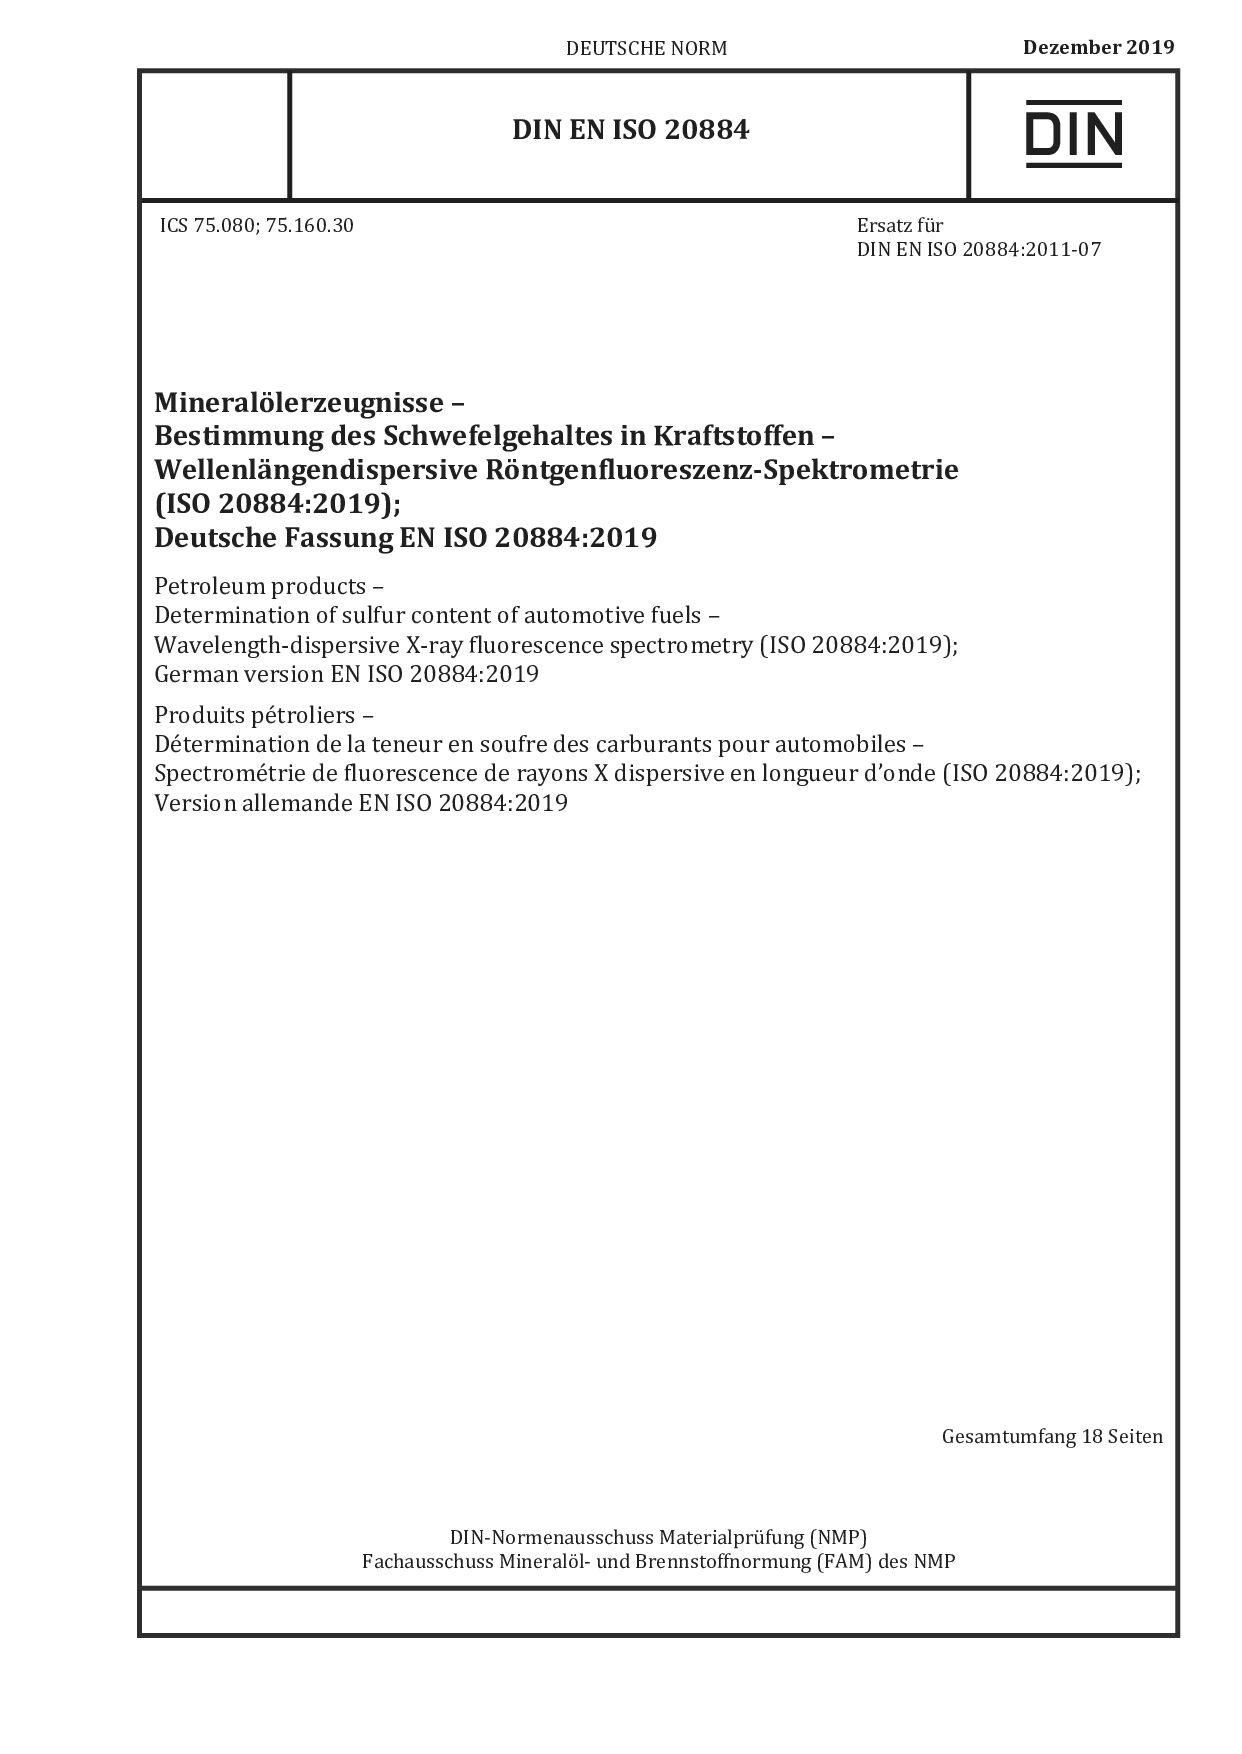 DIN EN ISO 20884:2019封面图